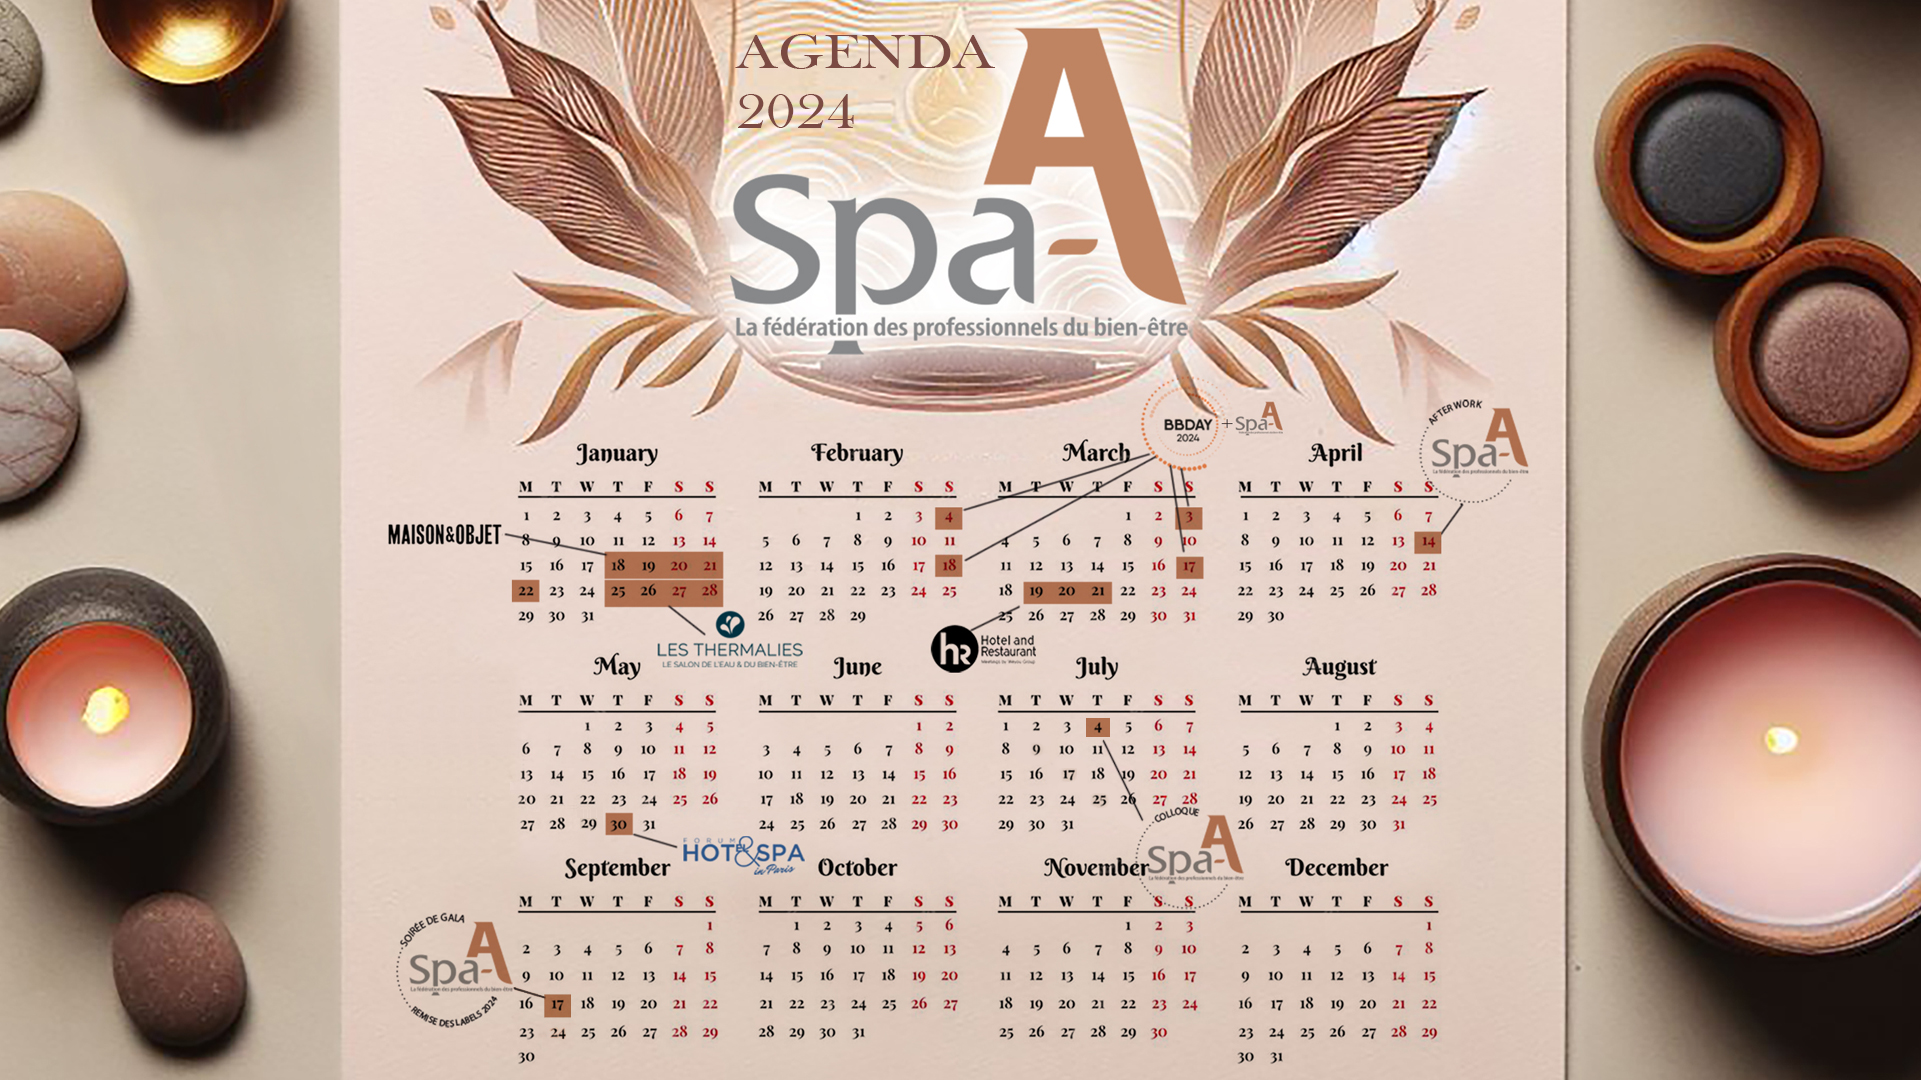 Spa-A-blog-agenda-2024